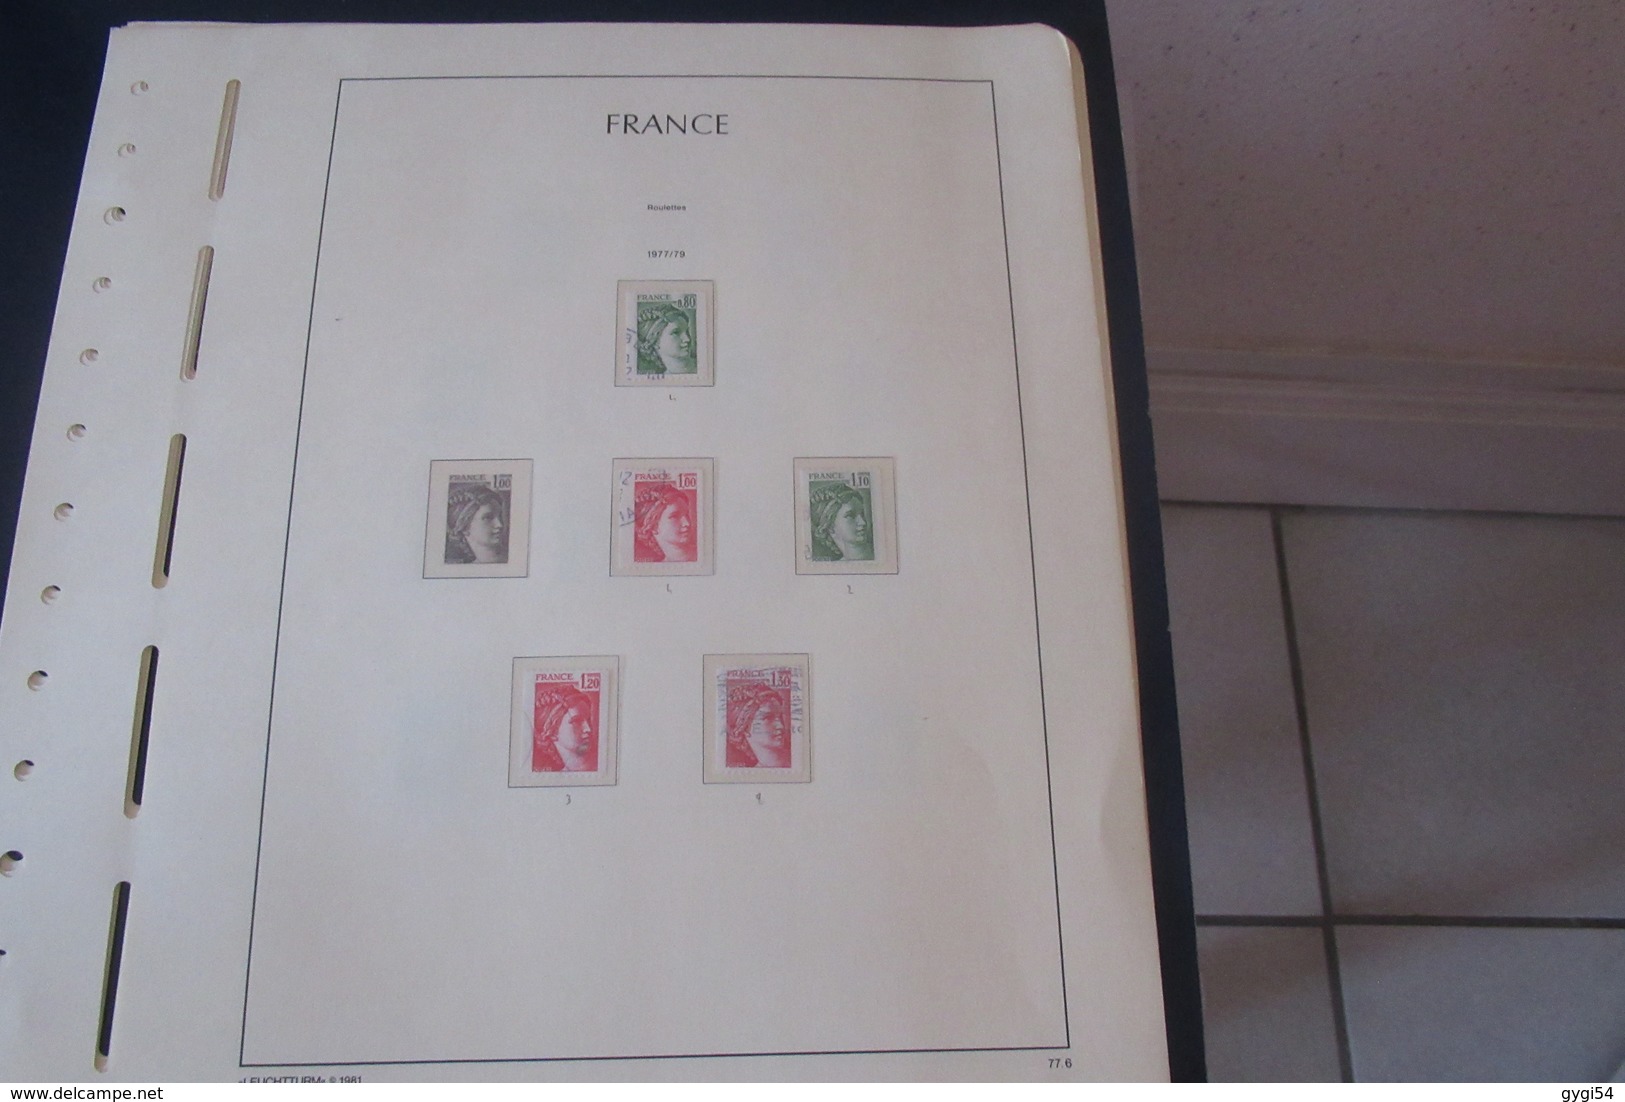 France  classiques  Poste Aérienne , Préos fins de Catalogue 43 sxans